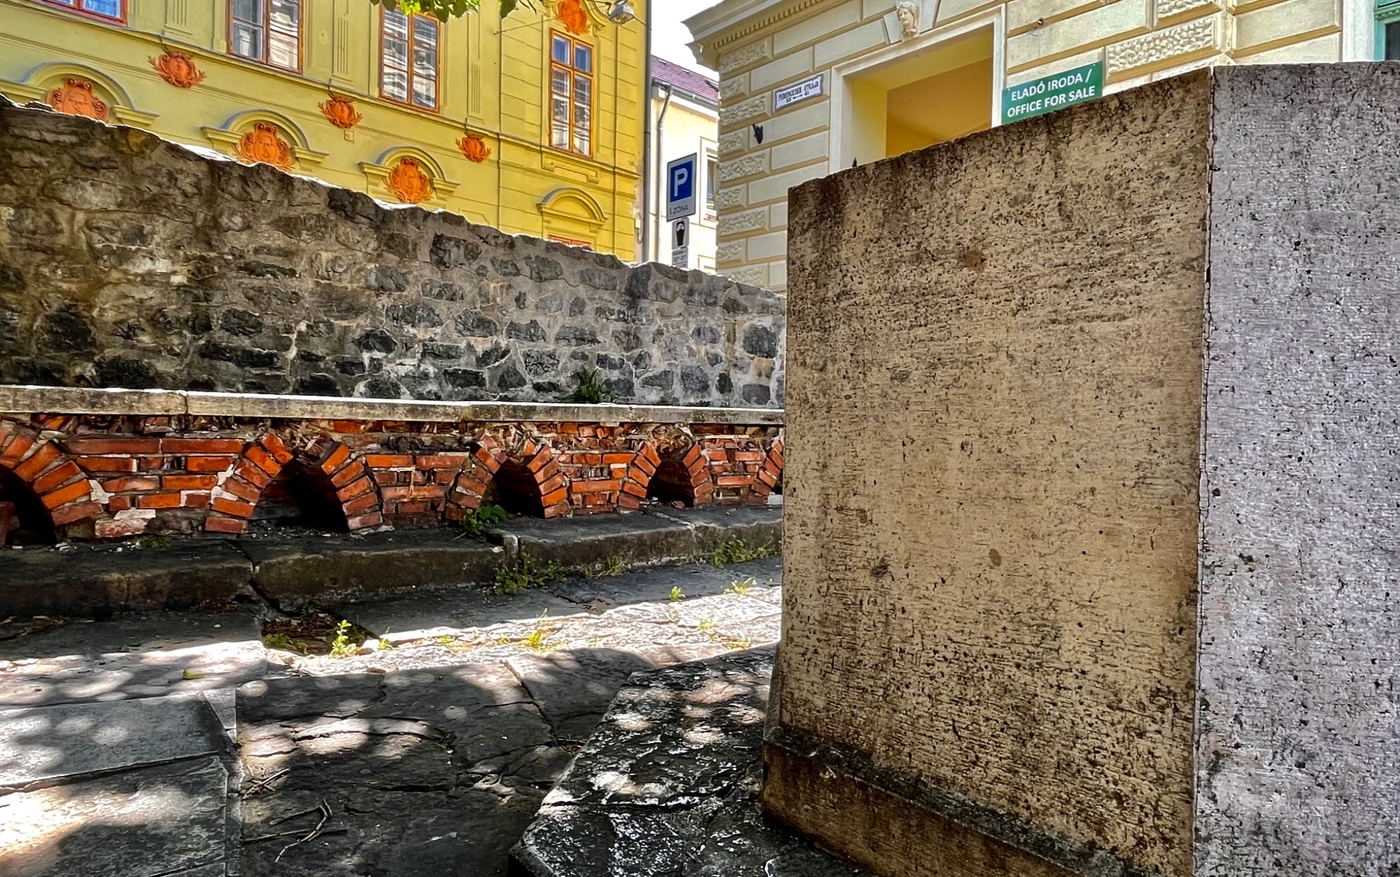 Memi pasa fürdője, a török idők egyik kivételes mementója Pécsen